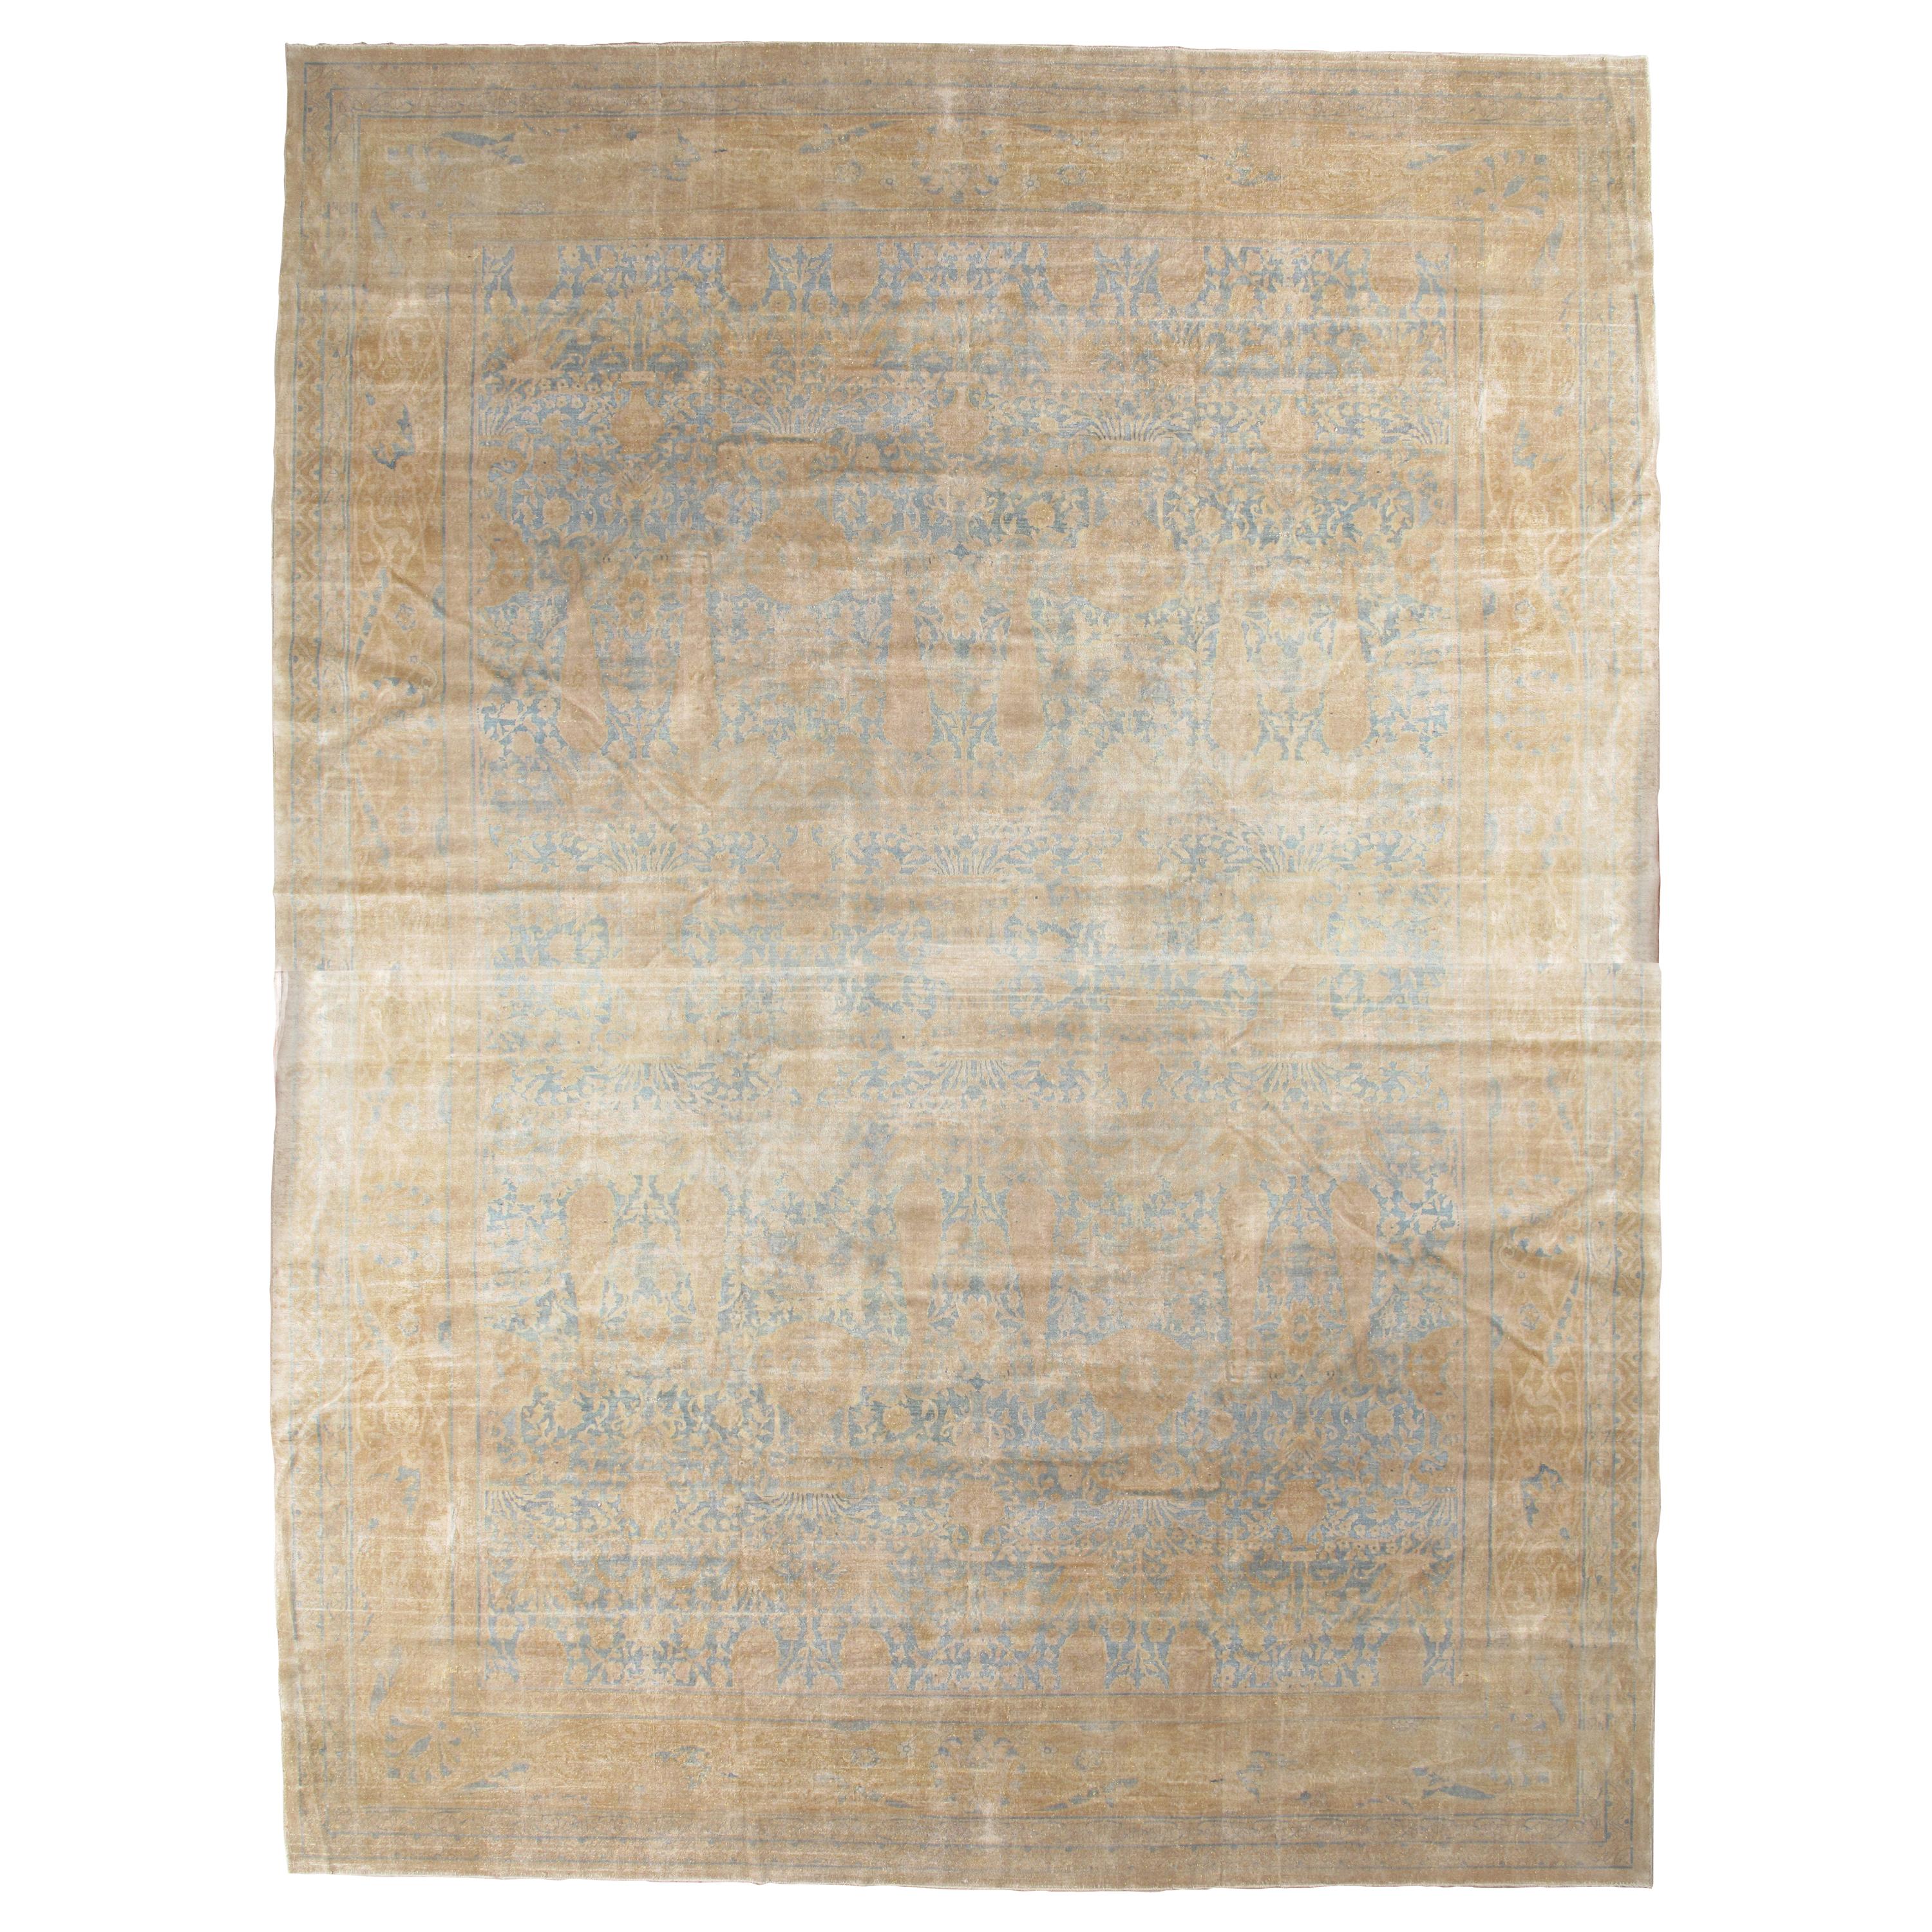 Antiker indischer Agra-Teppich, handgefertigter orientalischer Teppich, Hellblau, Gold, Elfenbein, weich